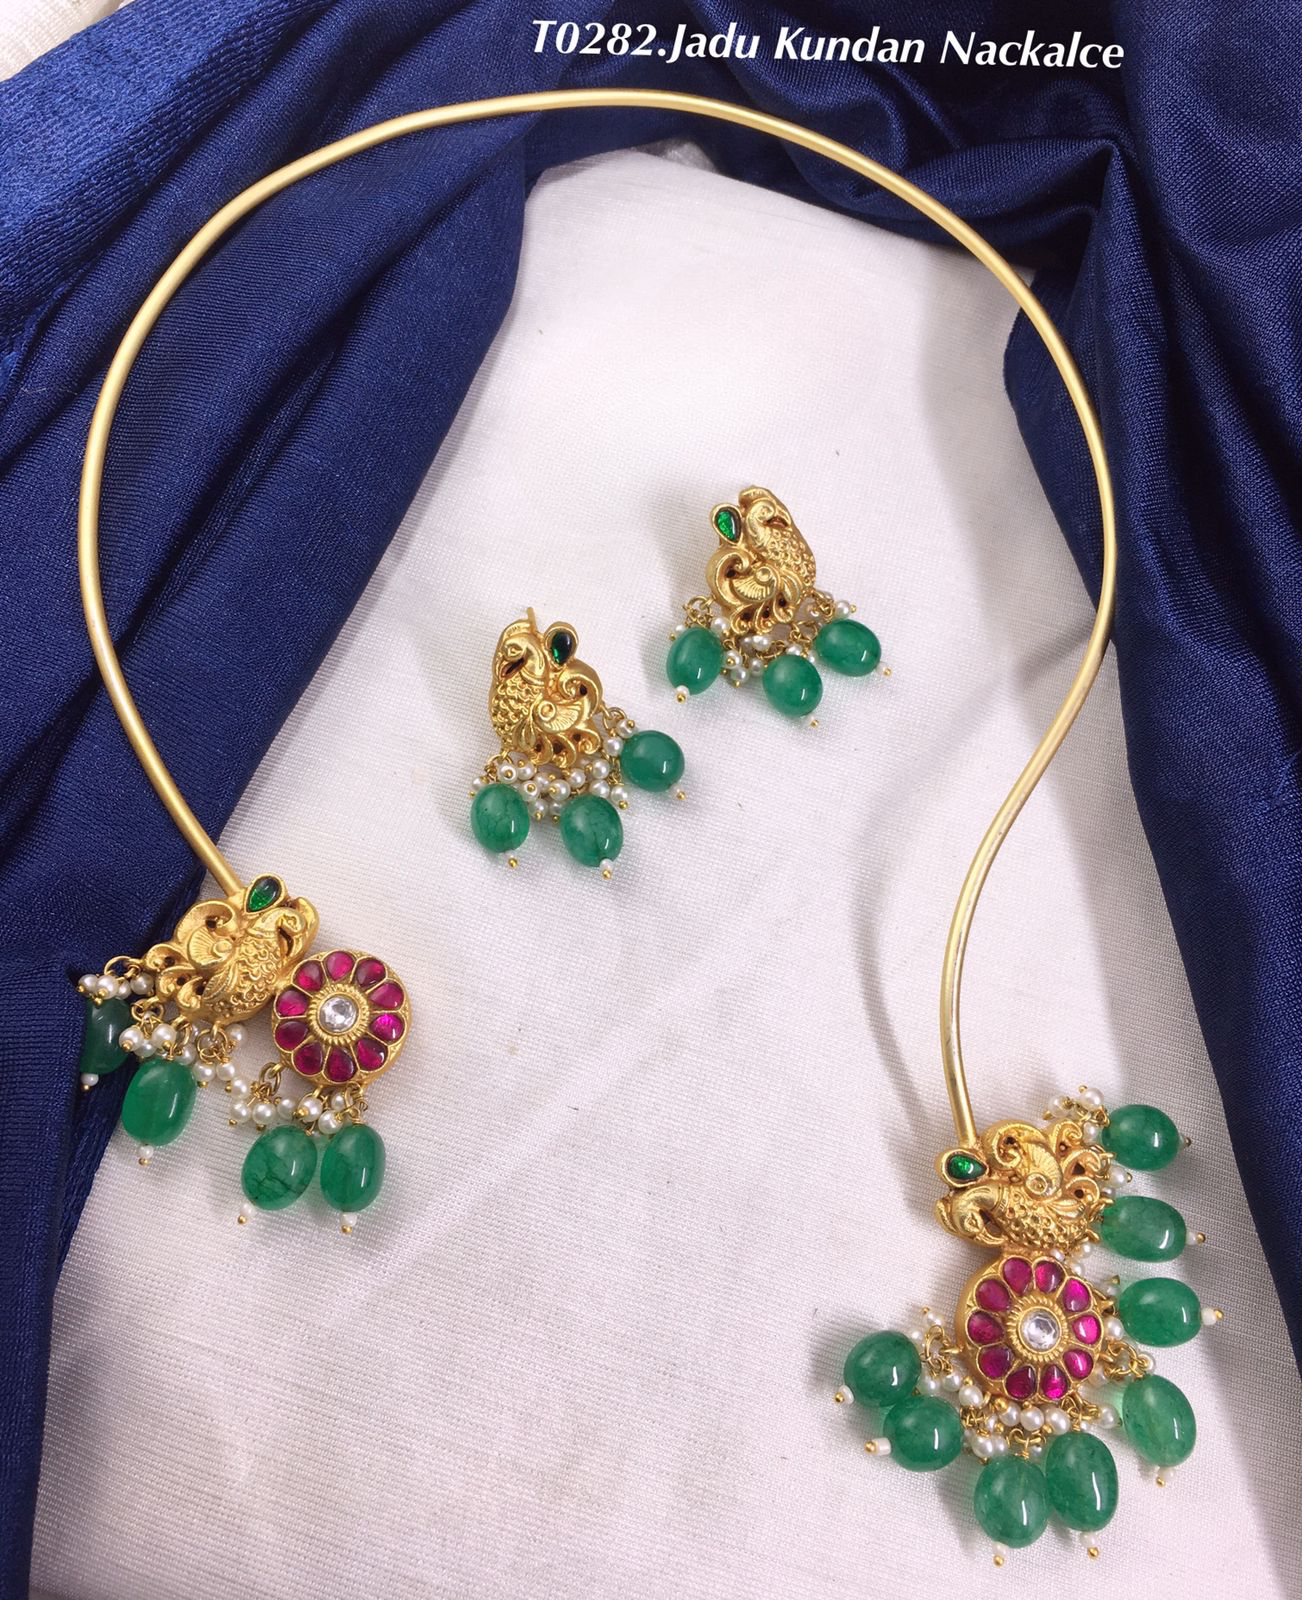 Premium Jadau Kundan Kanti Necklace with Studs